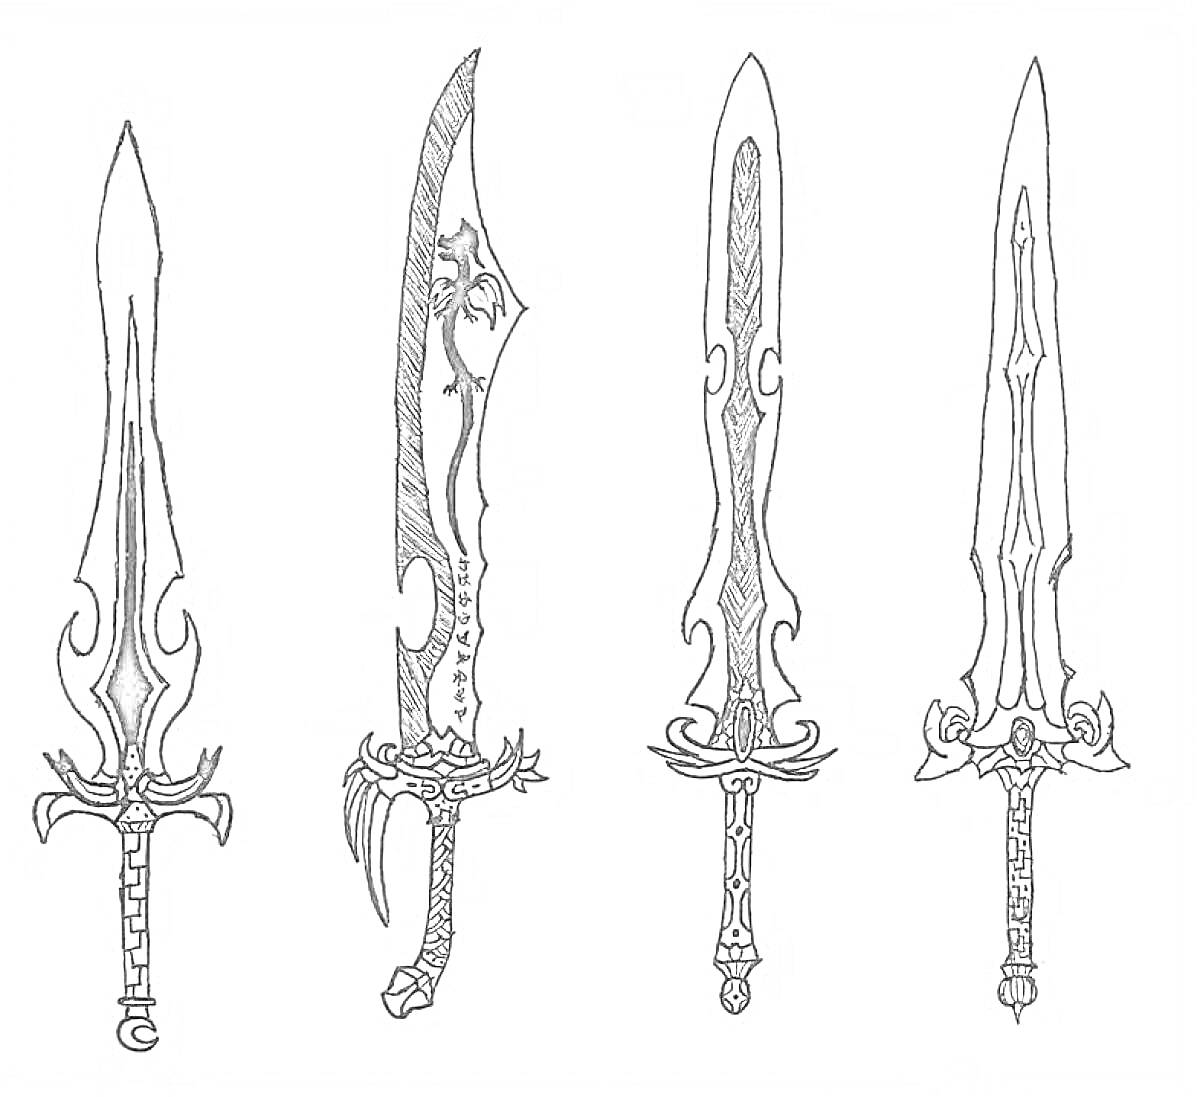 Четыре меча с декоративными элементами и резными рукоятками